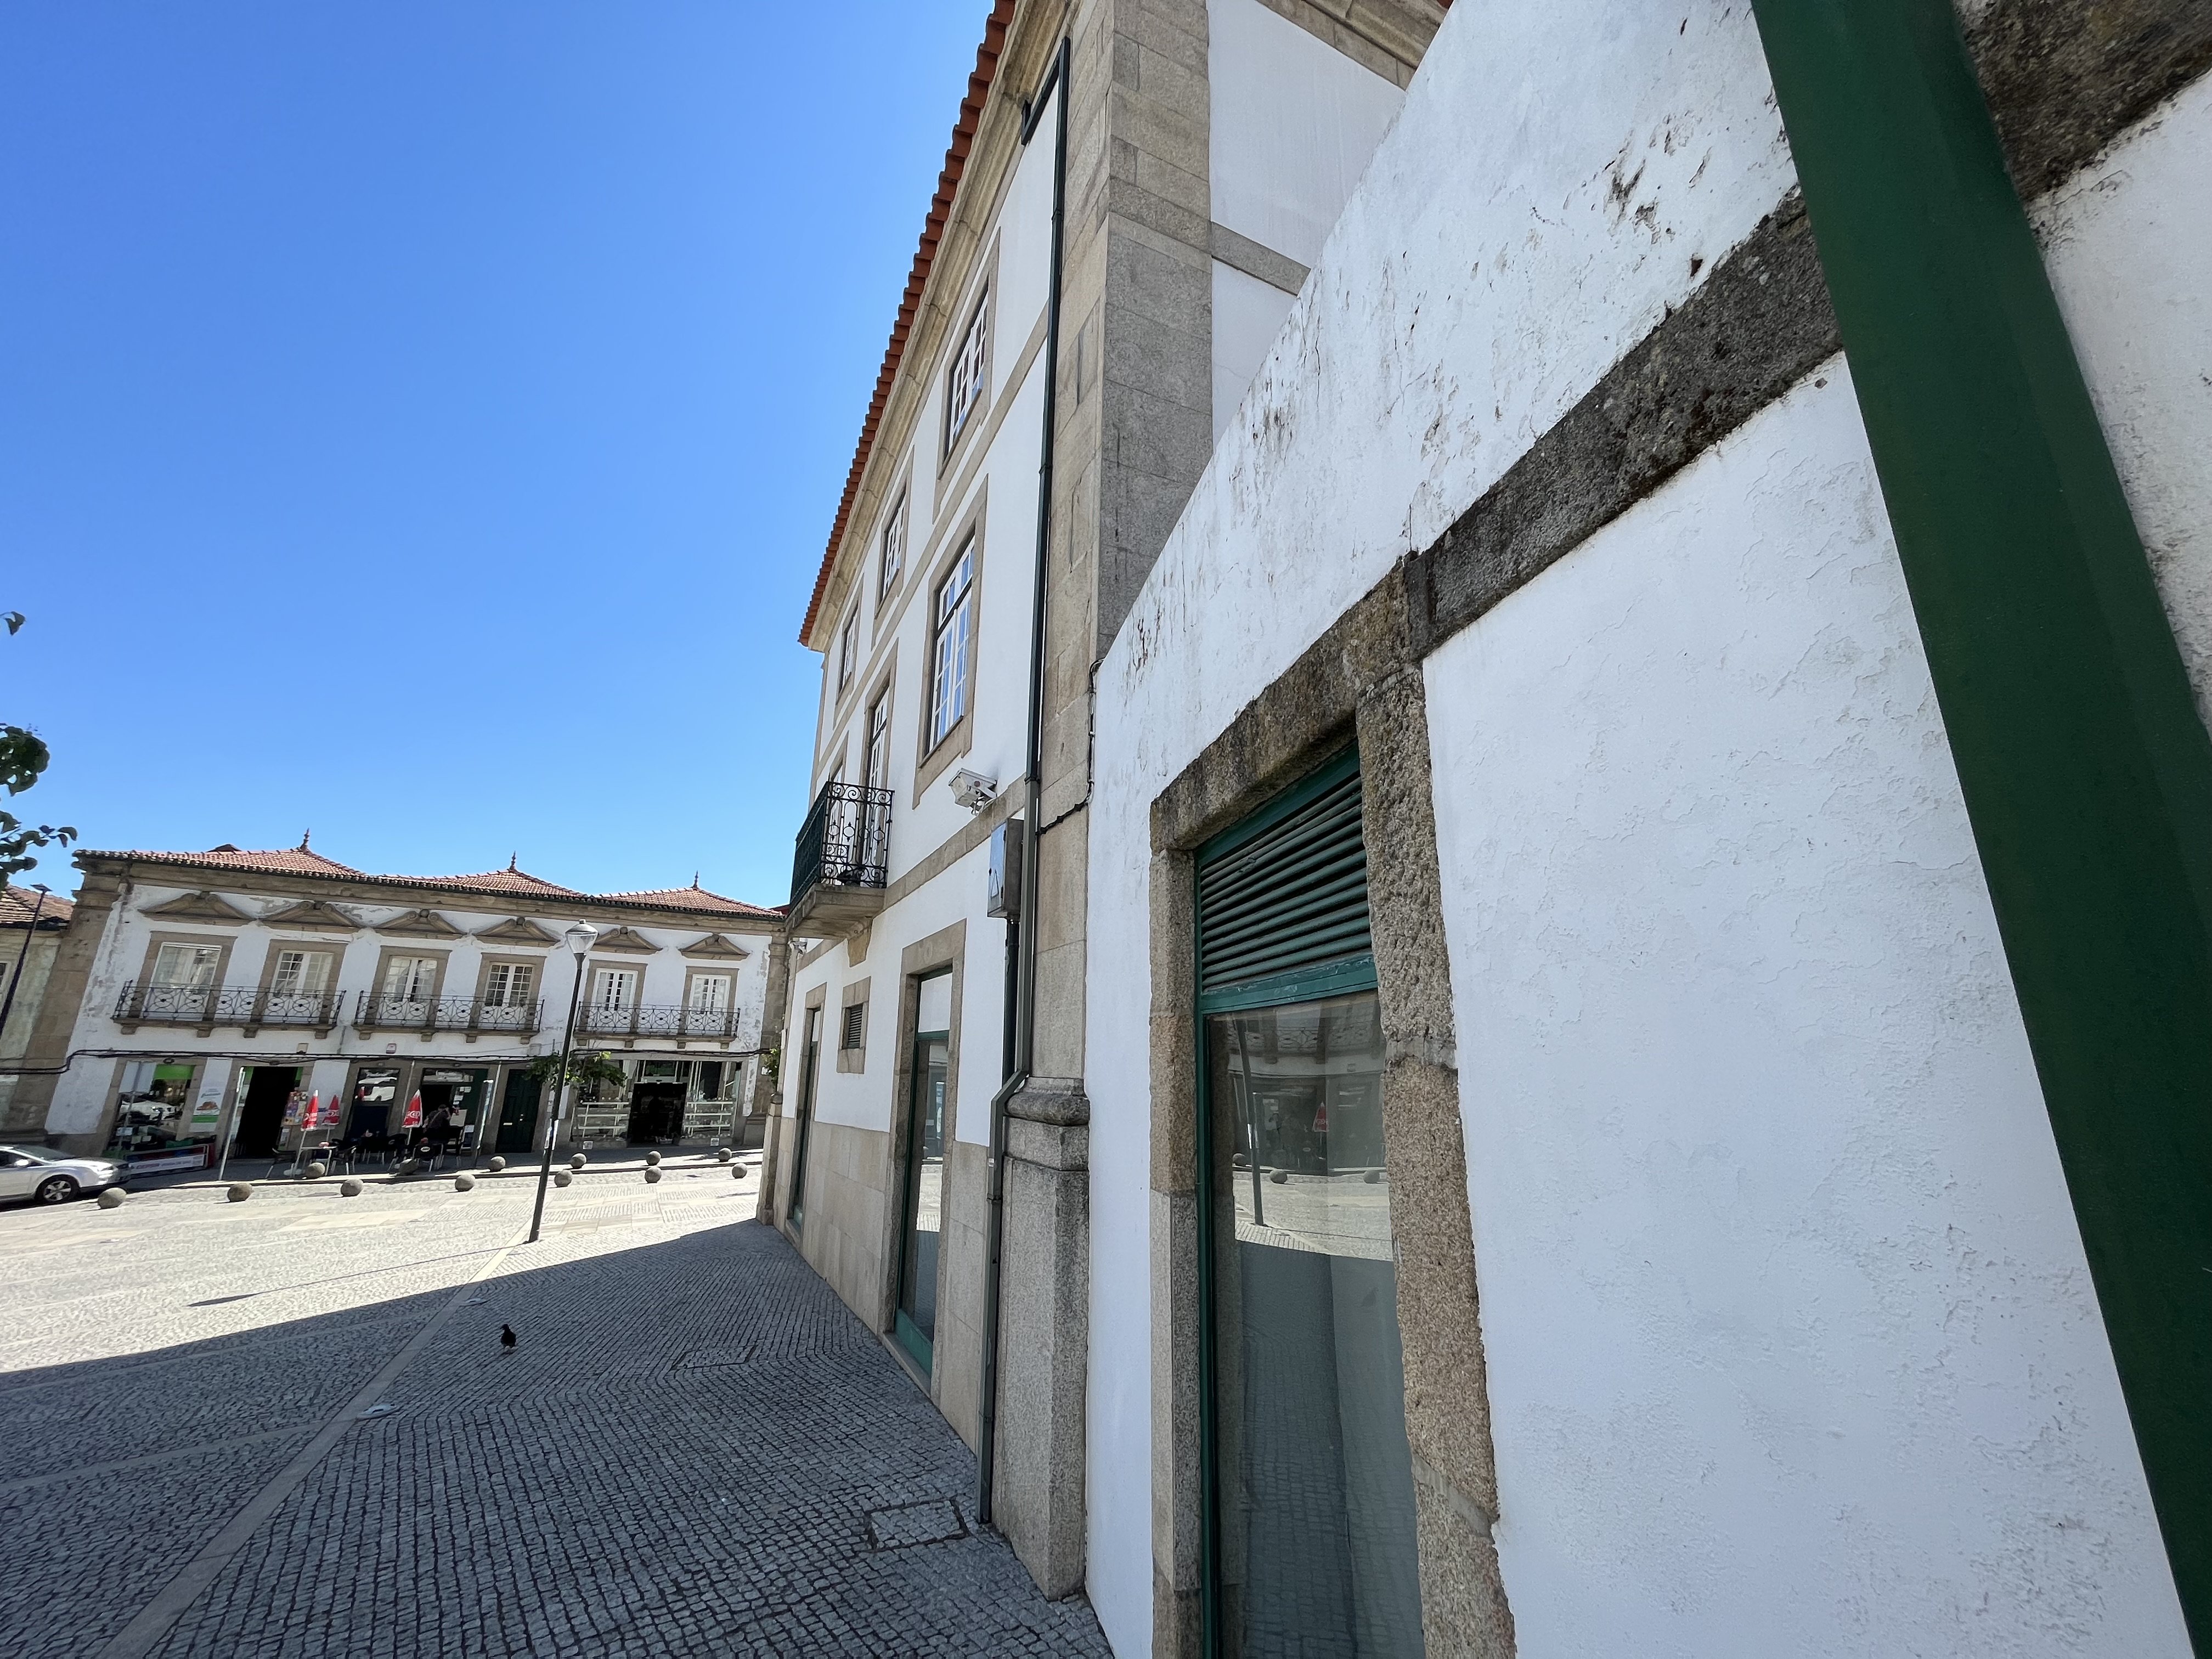 Foto 3 Vila Real, uma cidade dinâmica onde o interesse imobiliário aumenta